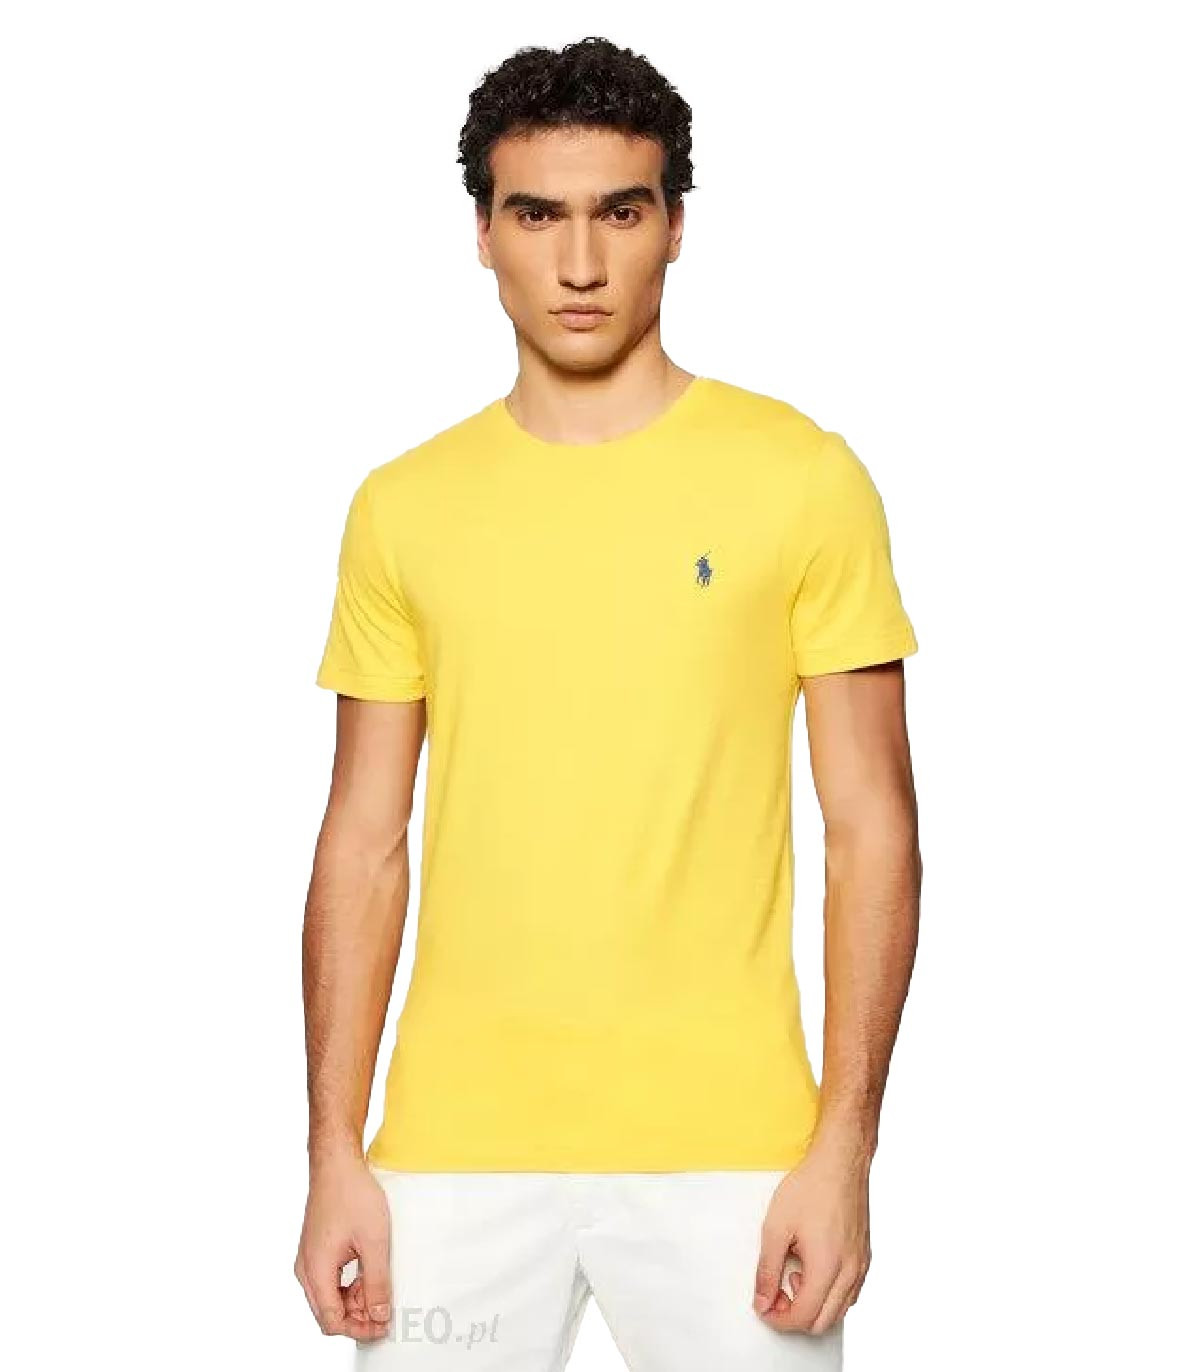 Polo Ralph Lauren - Camiseta Slim Fit - Amarillo